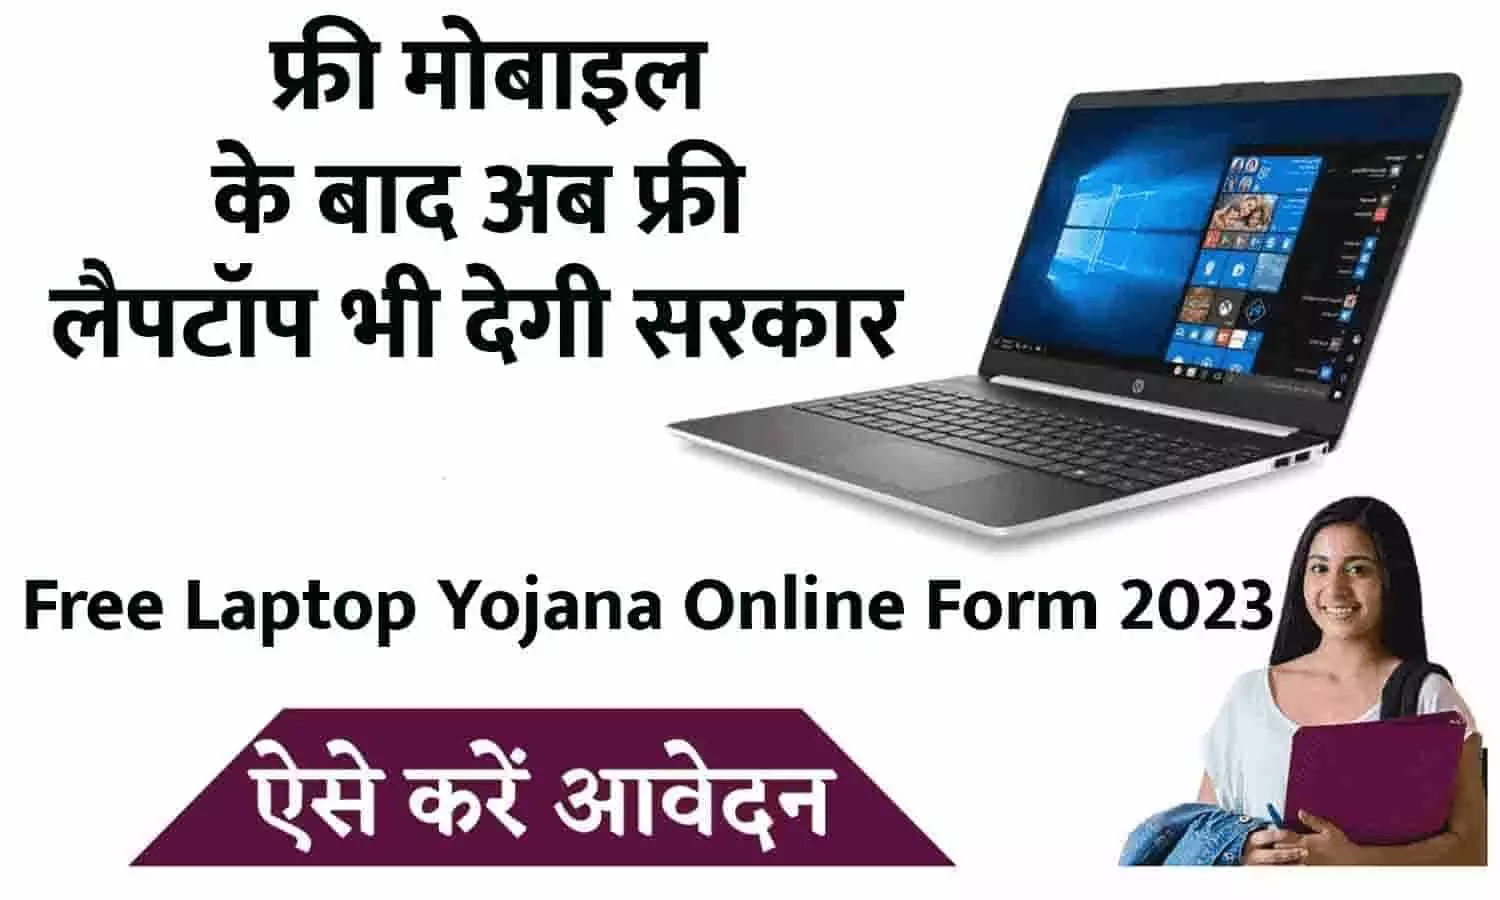 Free Laptop Yojana Online Form 2023: गुड न्यूज़! फ्री मोबाइल के बाद अब फ्री लैपटॉप भी देगी सरकार, इस लिंक rajeduboard.rajasthan.gov.in में क्लिक करके करे आवेदन